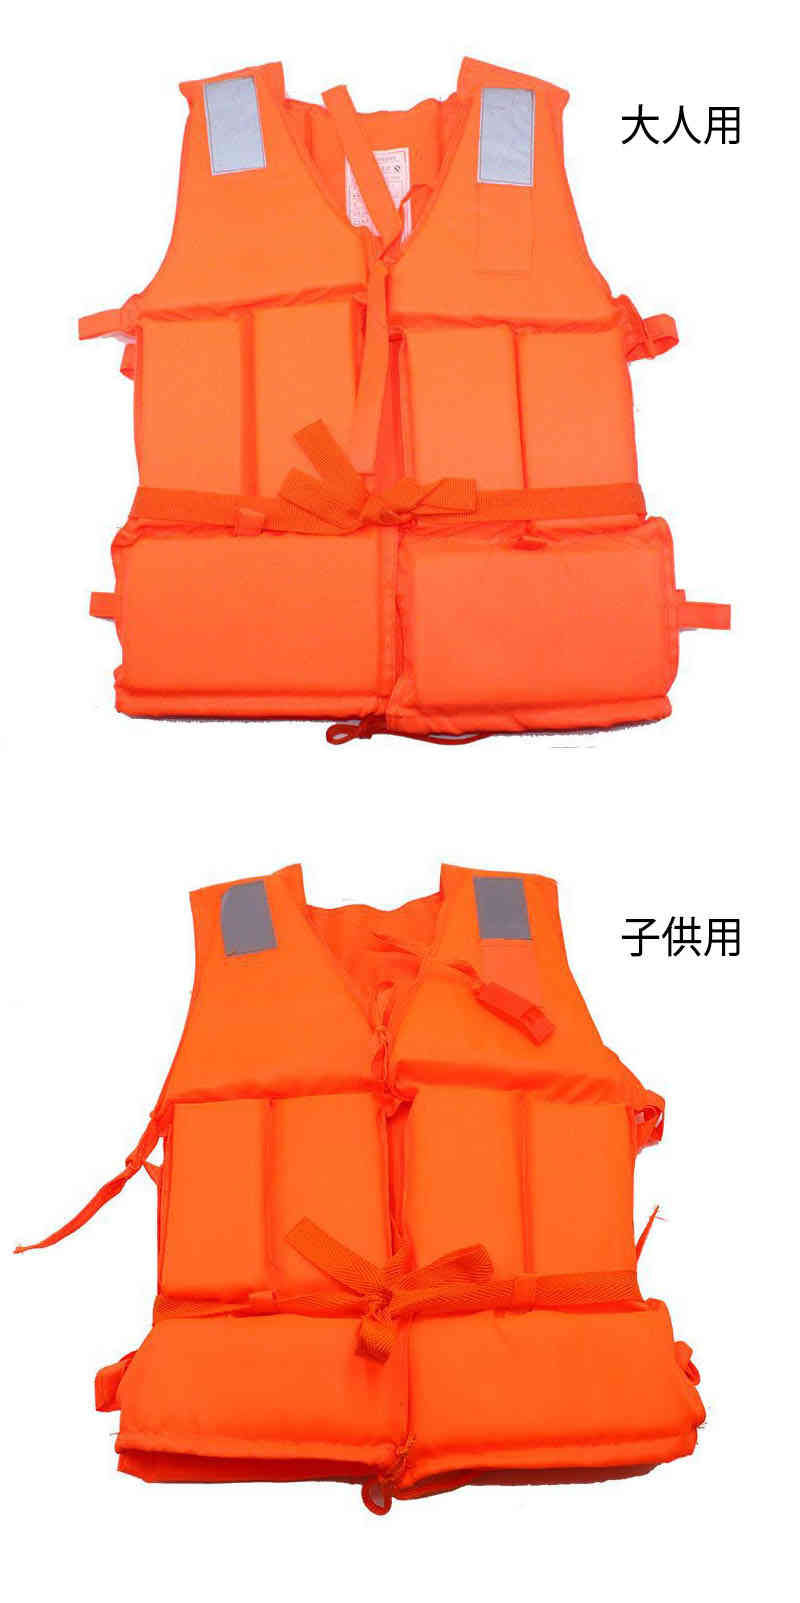 ライフジャケット ライフベスト 救命胴衣 サイズ調節可 撥水性 高い浮力 ホイッスル付き 緊急場合対応 子供用 大人用 小型船舶用 海水浴 男女兼用